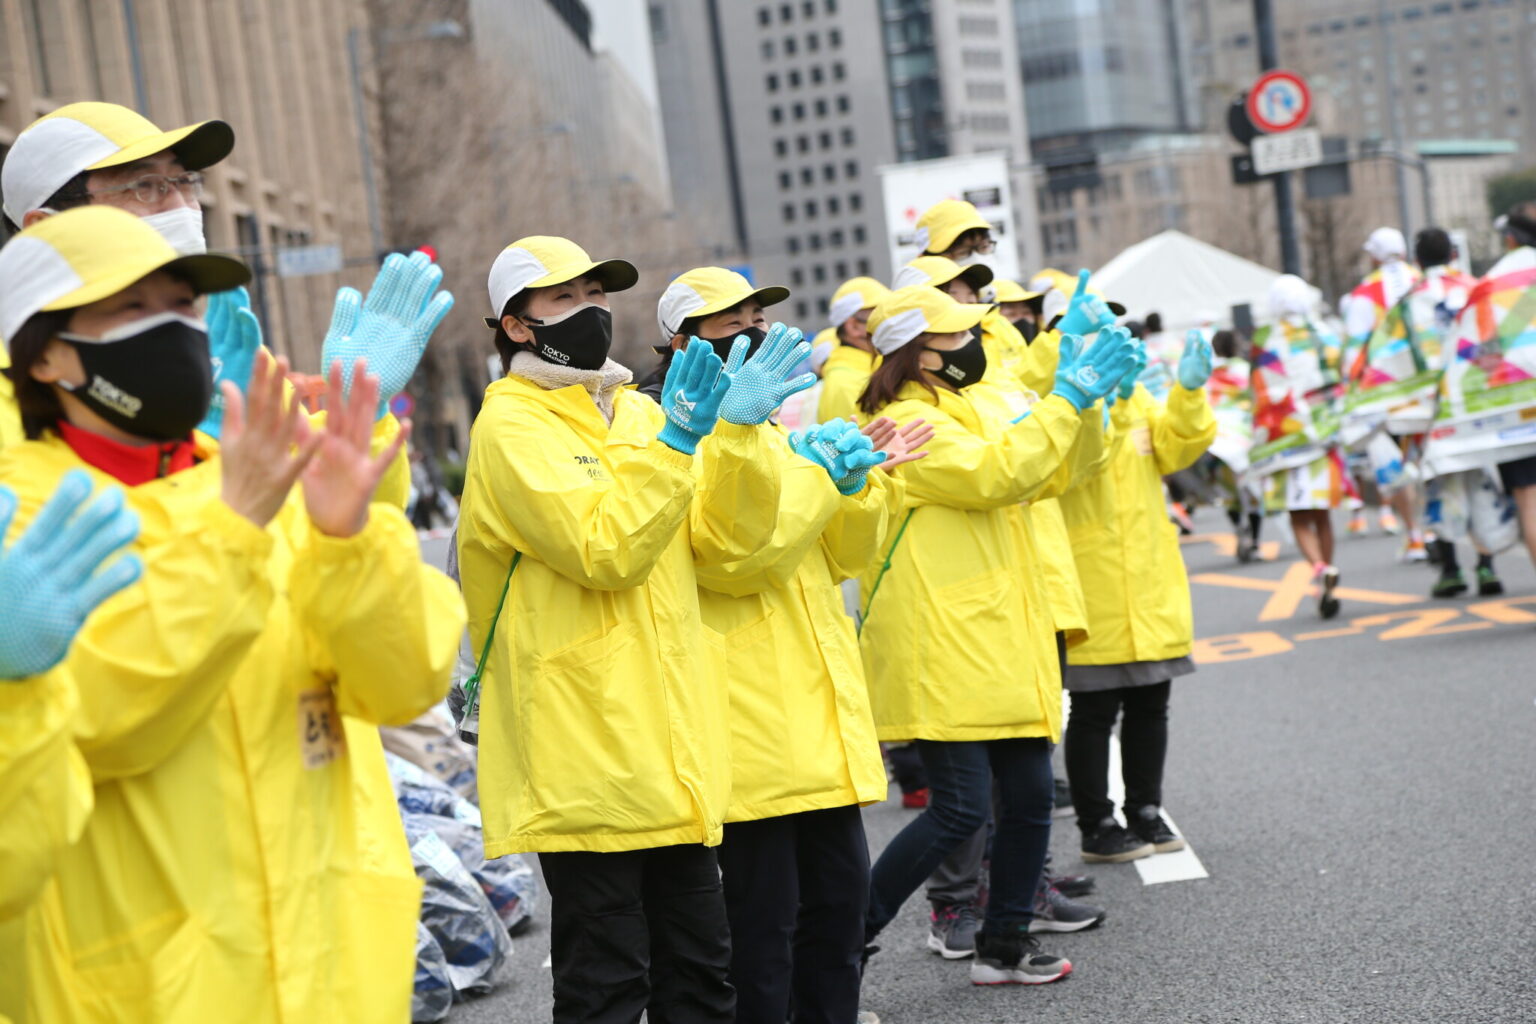 給水・給食やコースの整理、警備など数万人のボランティアスタッフが大会を支えている。©東京マラソン財団